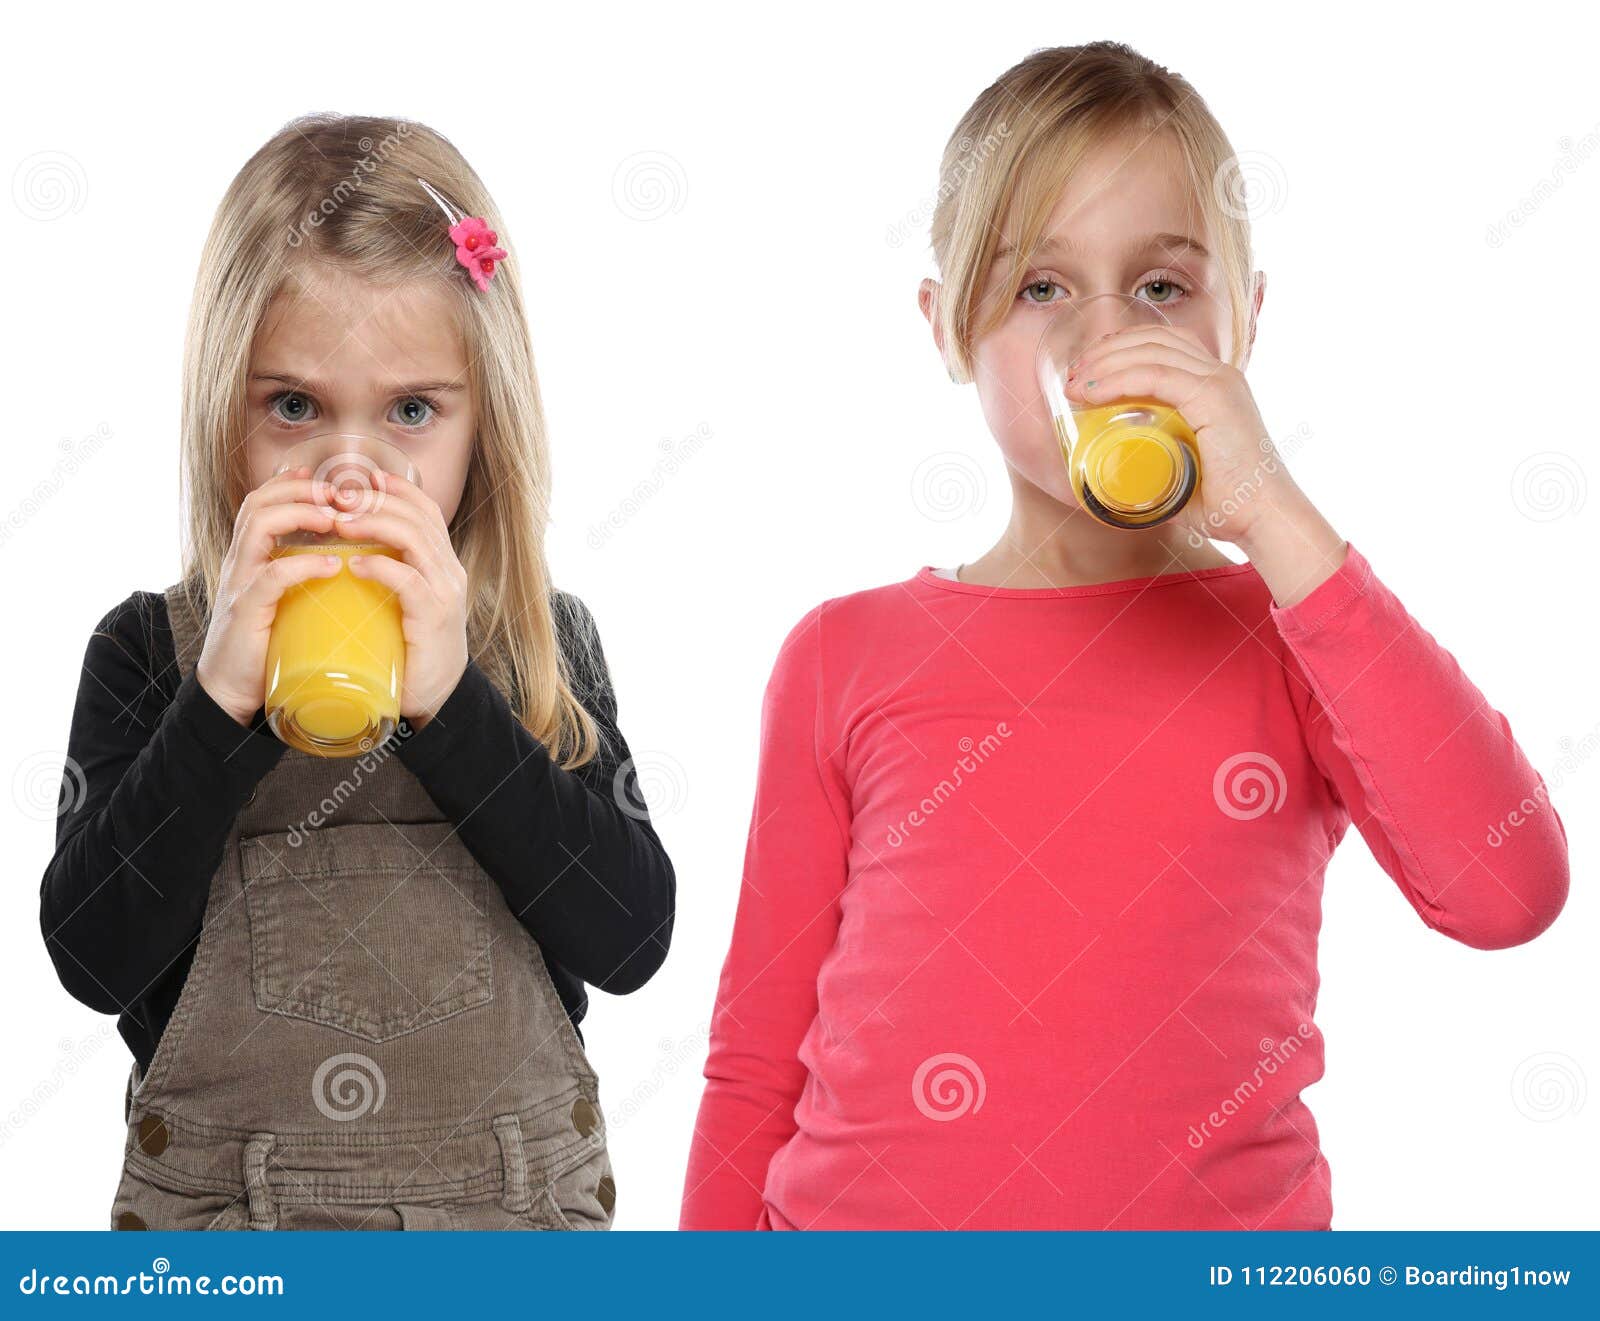 маленькая девочка пьет сперму фото 96